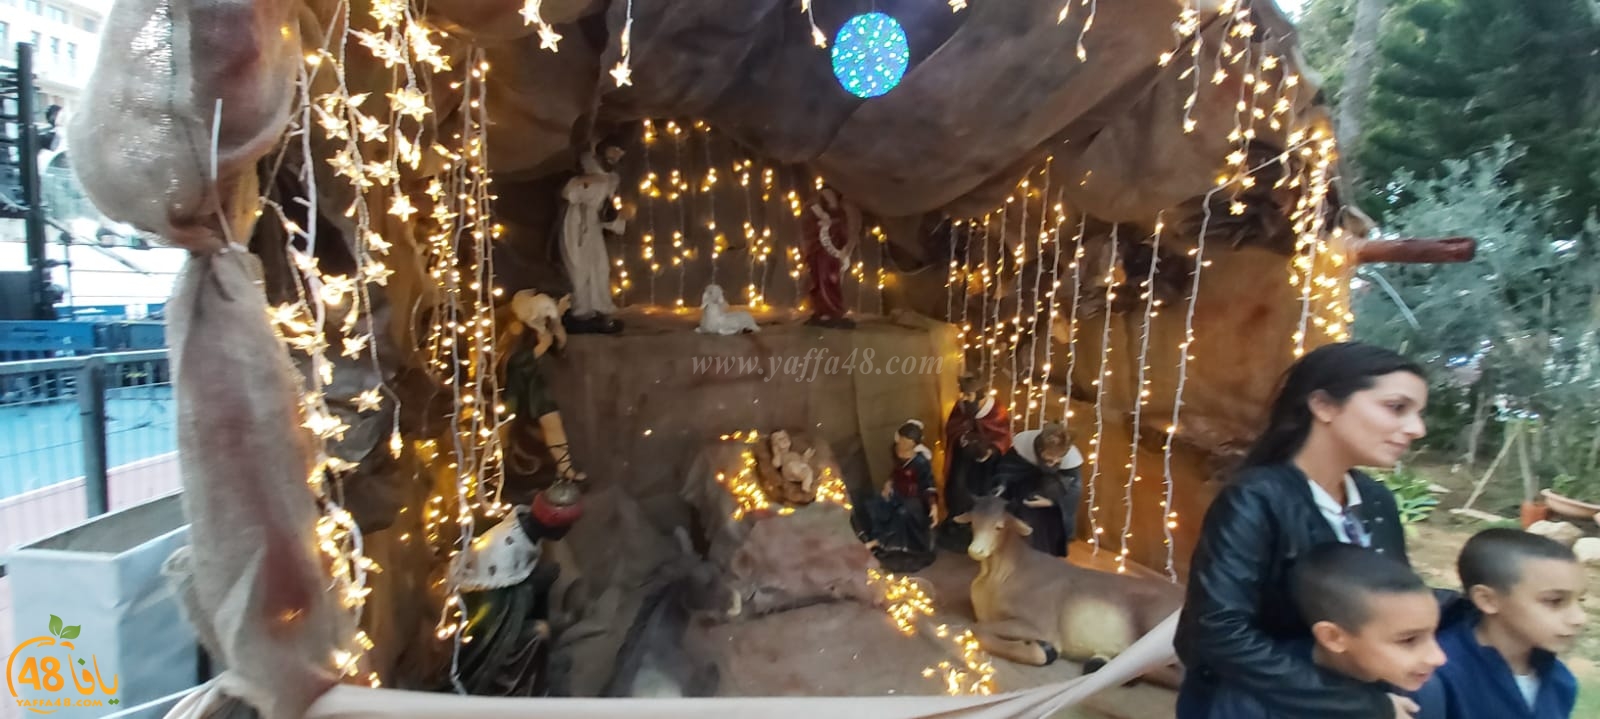  صور: جماهير غفيرة تُشارك في سوق عيد الميلاد المجيد بكنيسة الخضر بيافا